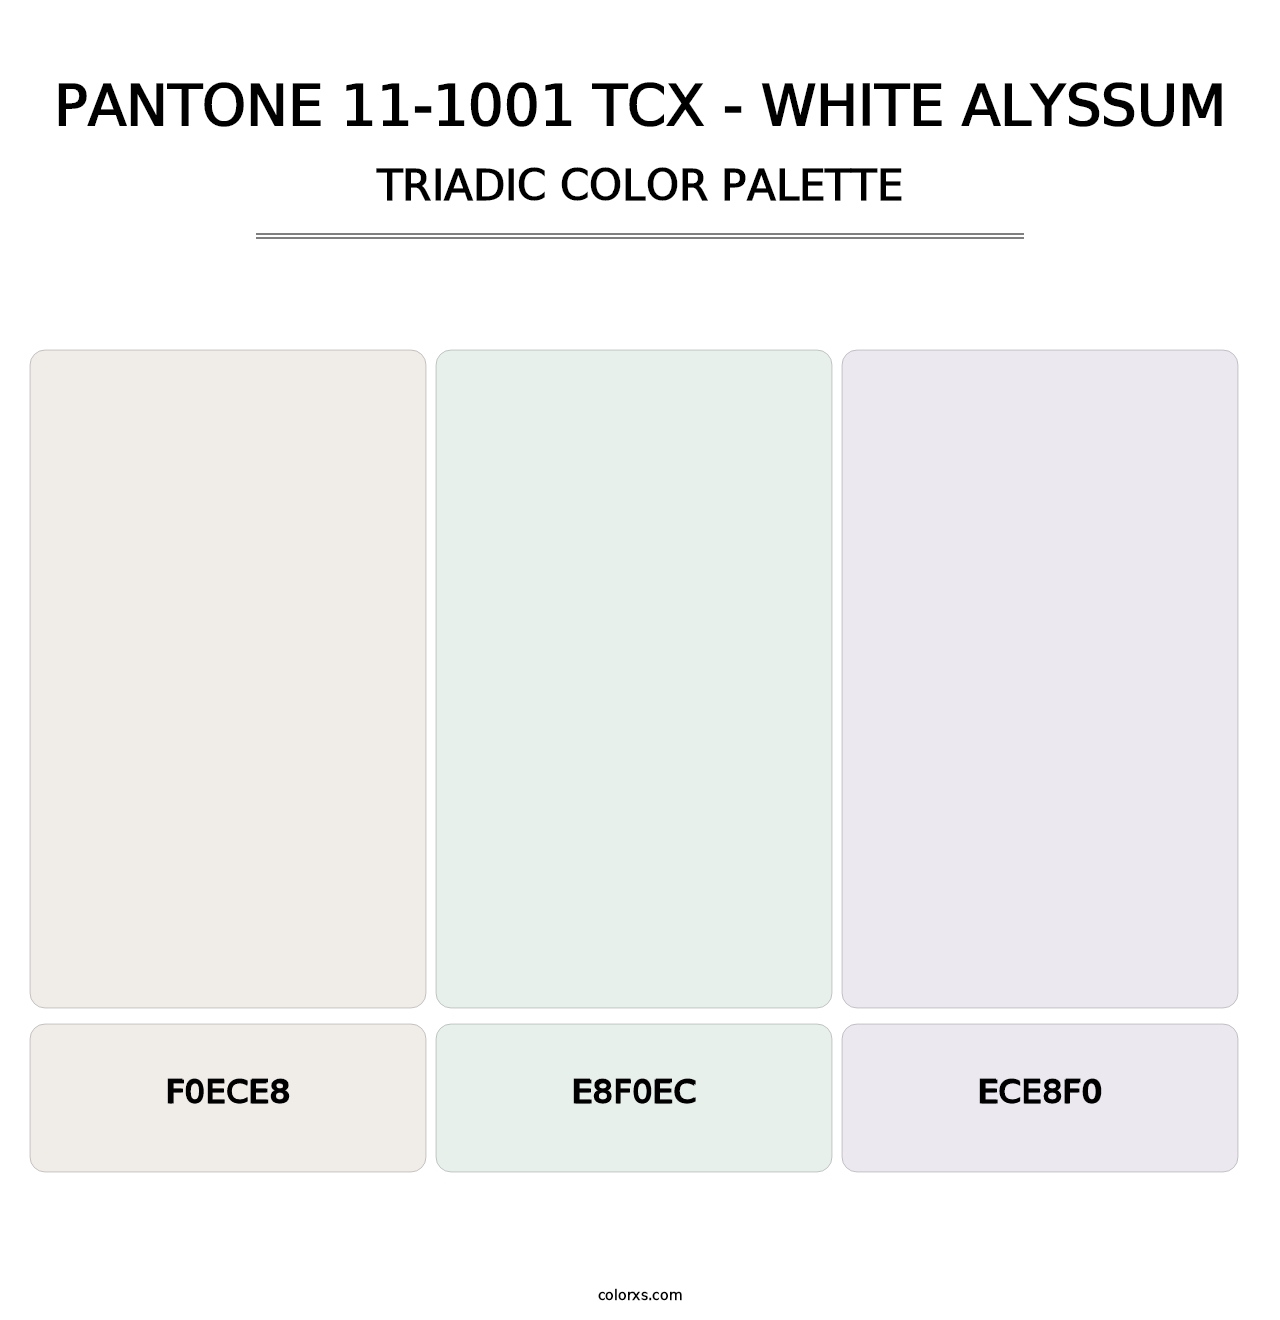 PANTONE 11-1001 TCX - White Alyssum - Triadic Color Palette